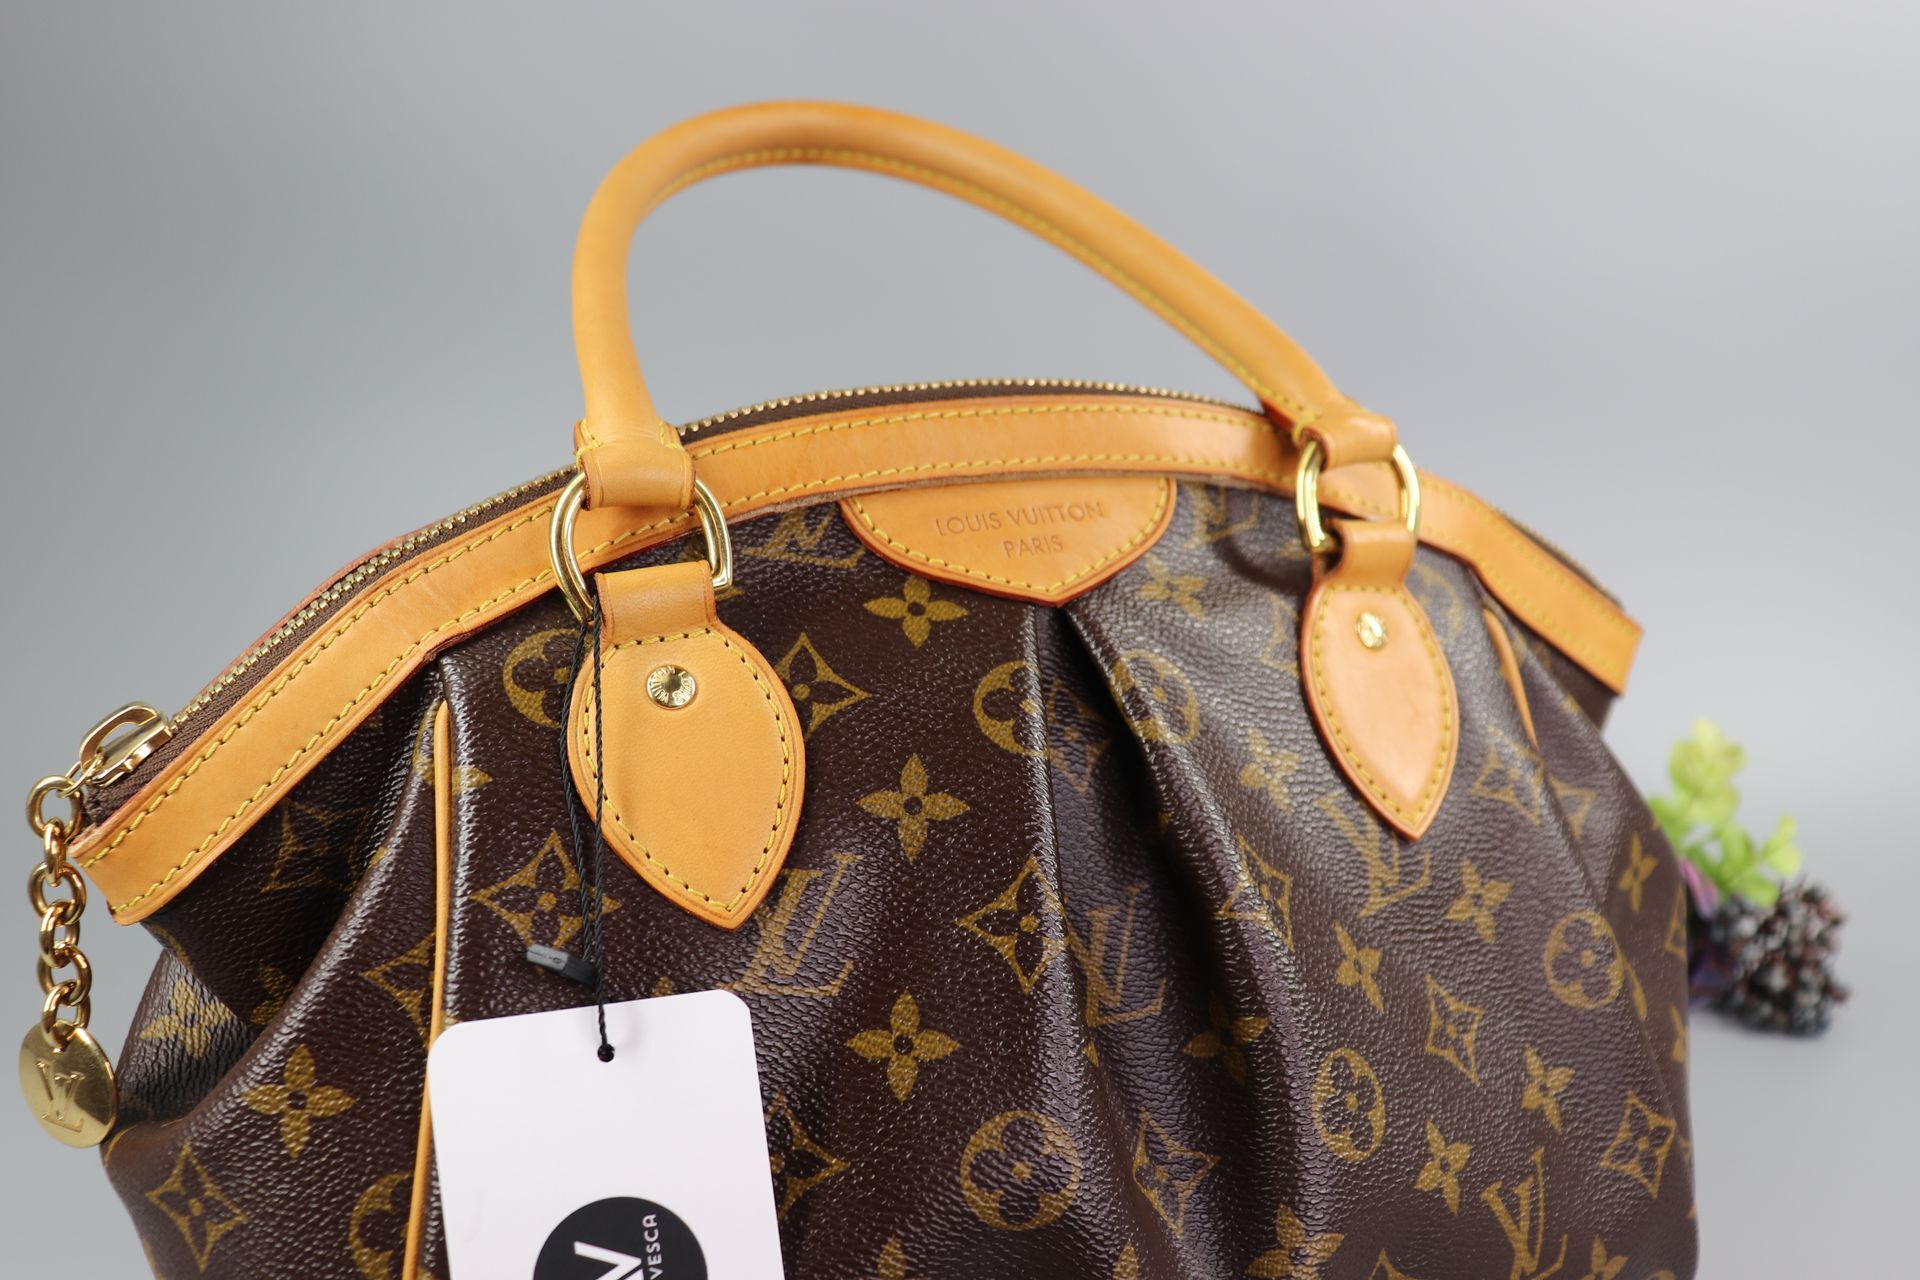 100% Authentic Louis Vuitton Monogram Tivoli PM Shoulder Bag